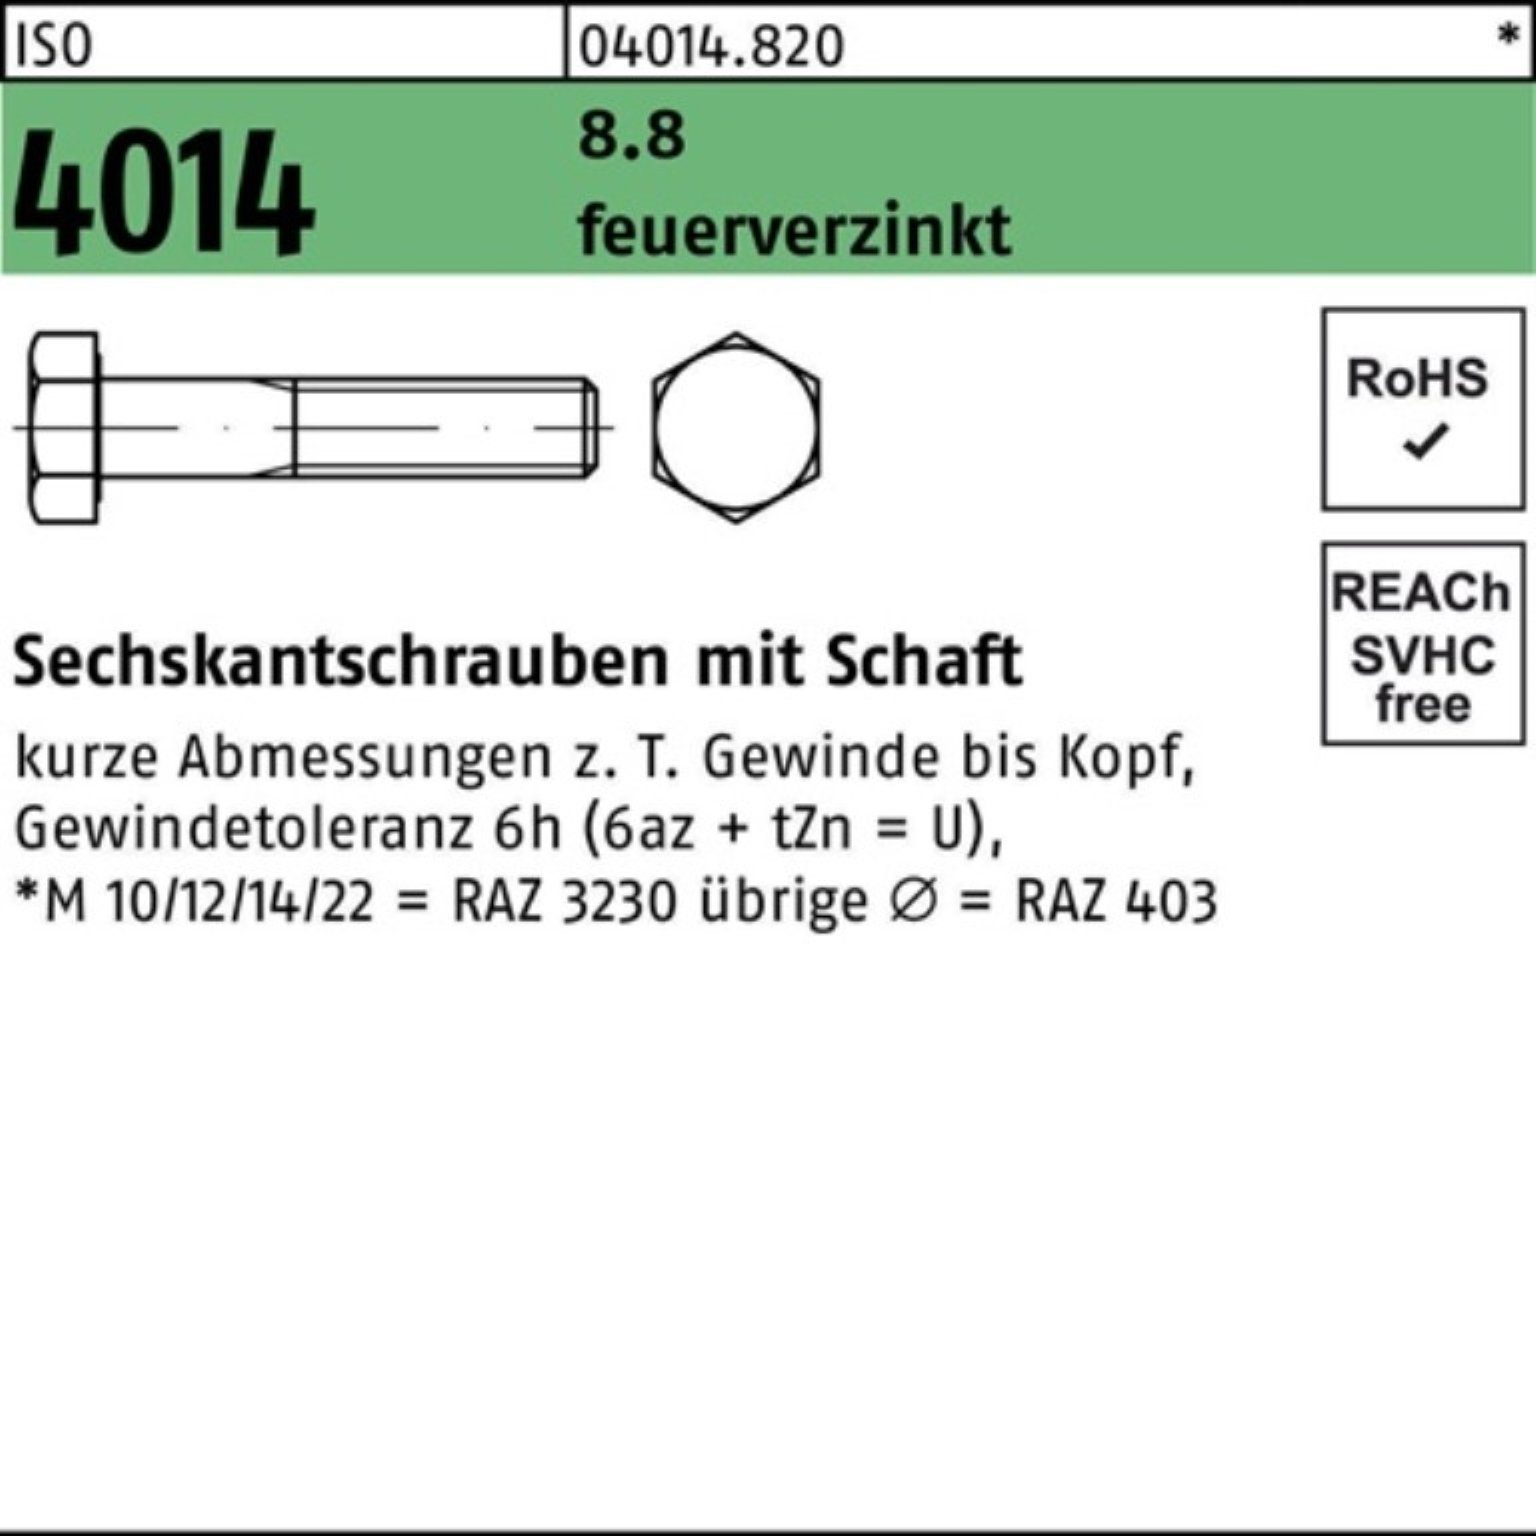 Bufab Sechskantschraube 100er Pack Sechskantschraube ISO 4014 Schaft M27x 120 8.8 feuerverz. 1